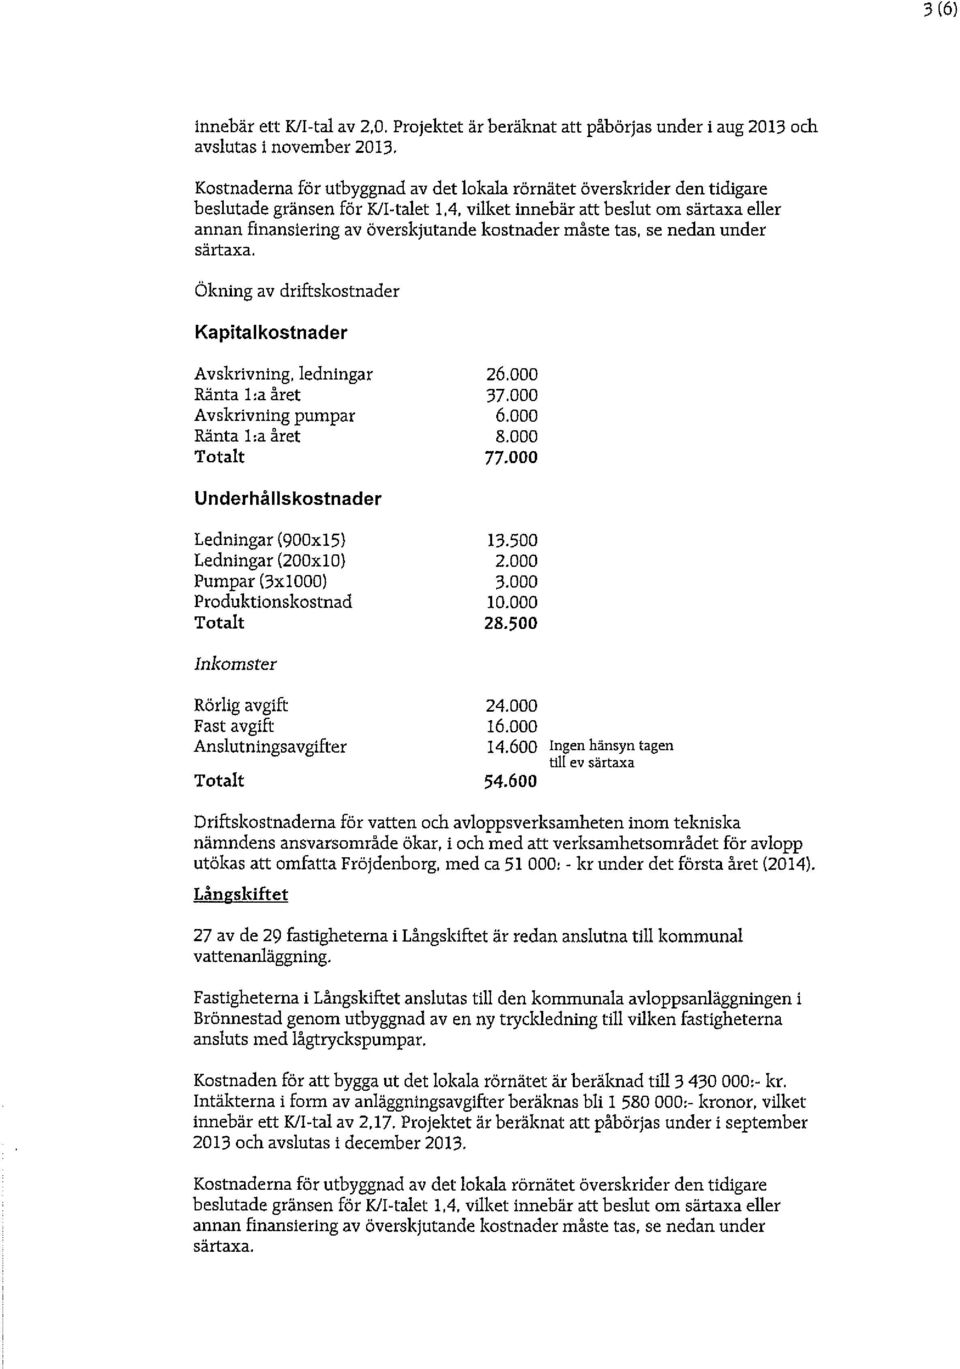 600 Ingen hänsyn tagen 54.600 utökas att omfatta Fröjdenborg, med ca 51 000: - kr under det första året (2014).